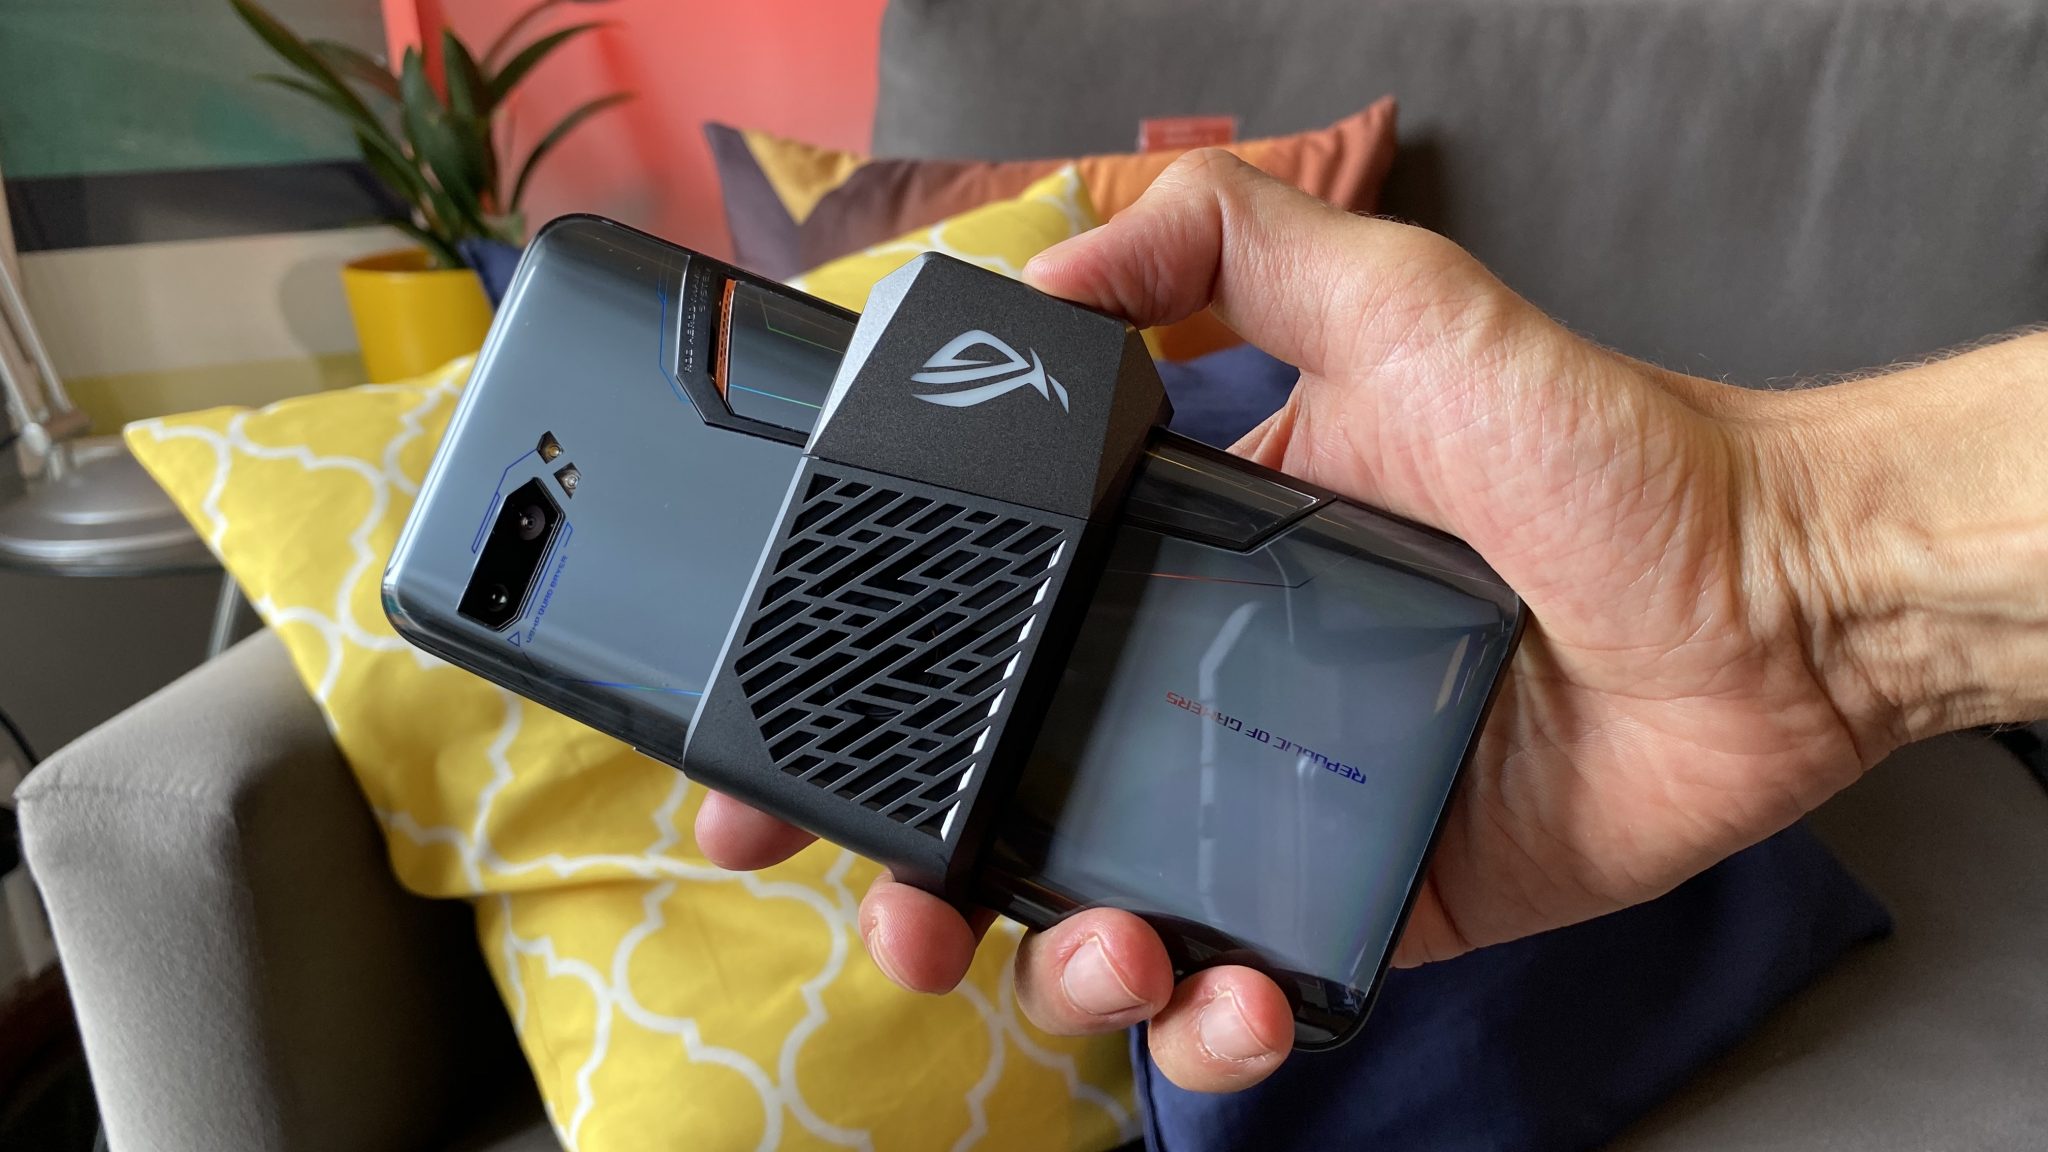 يعد ROG Phone 2 أكثر من مجرد هاتف ذكي رائع للاعبين 126